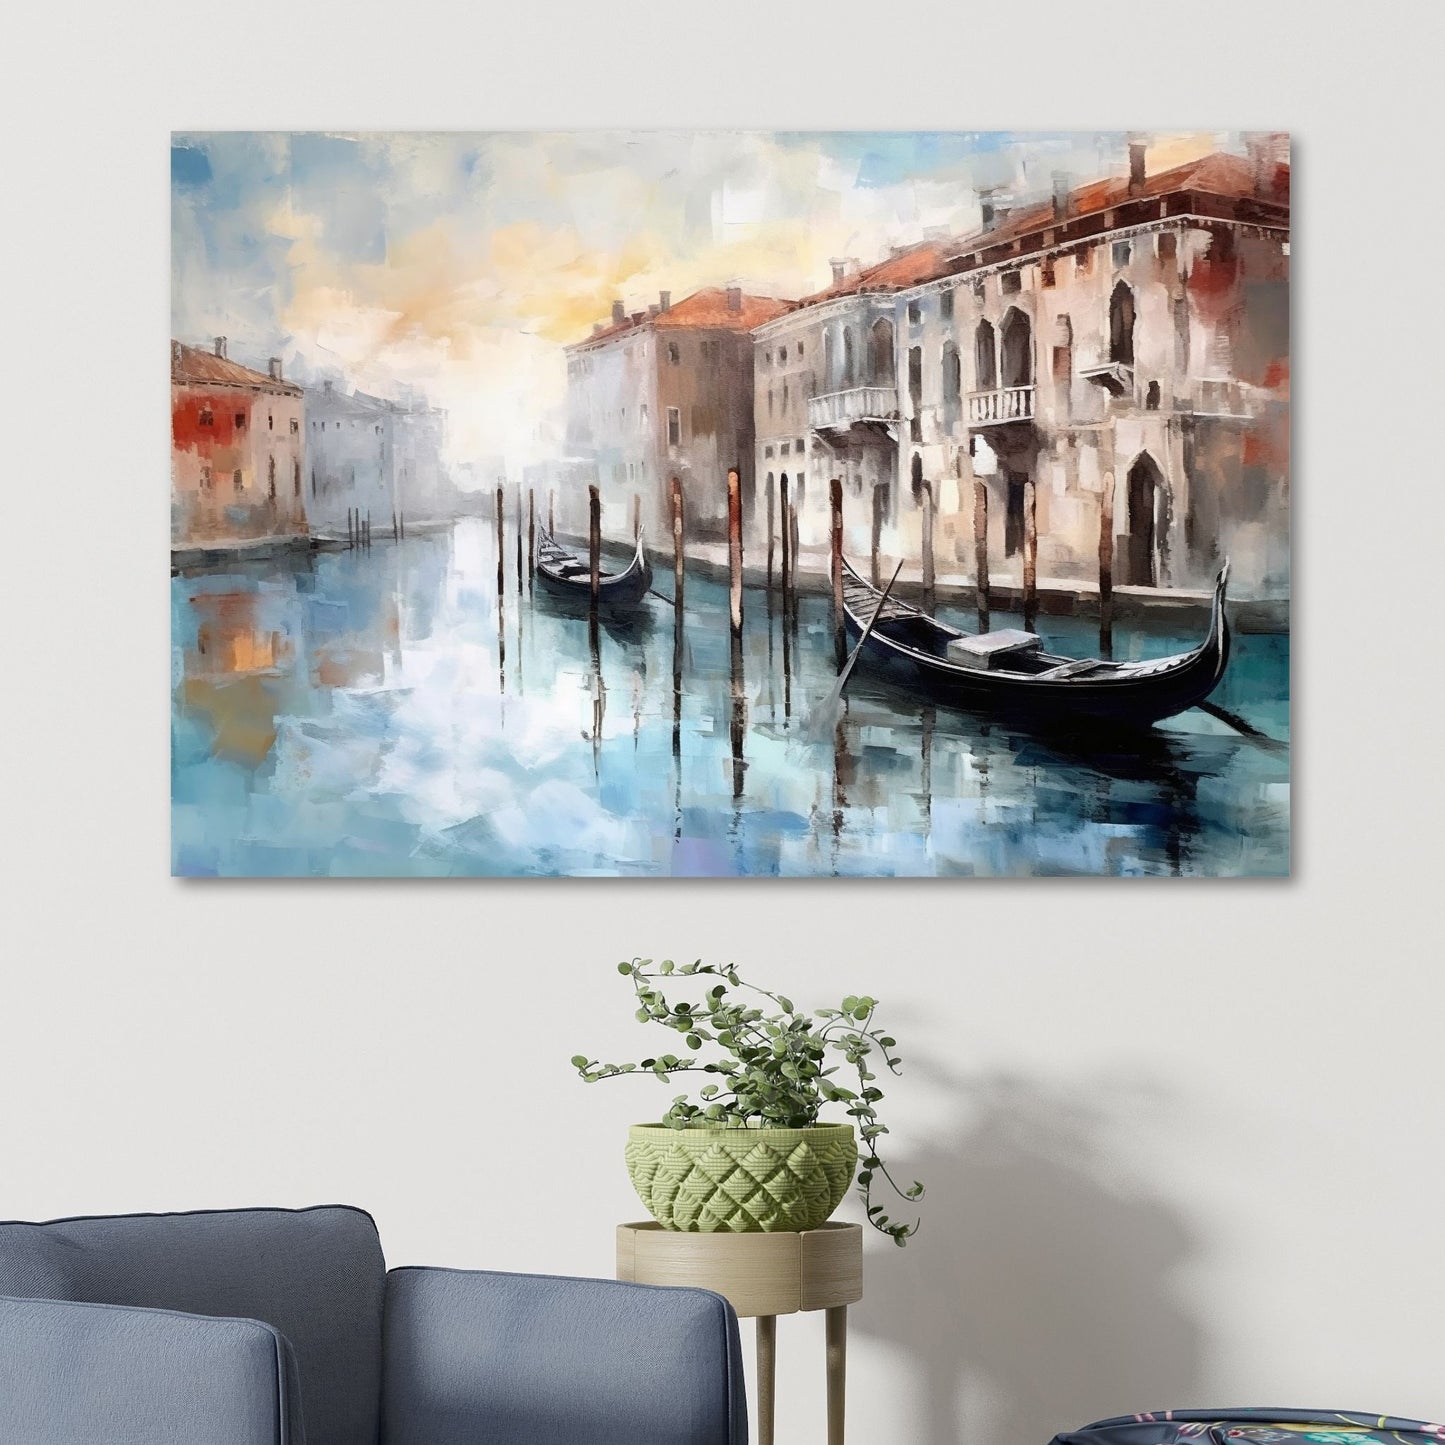 Grafisk maleri. Utforsk den romantiske skjønnheten med vår Venezia plakat og lerret. Dykk inn i det pulserende hjertet av Italia mens du tar inn synet av gondoler som ligger i kanalene og de fargerike bygningene som speiler seg i det stille vannet. Illustrasjon som viser motivet på lerret.